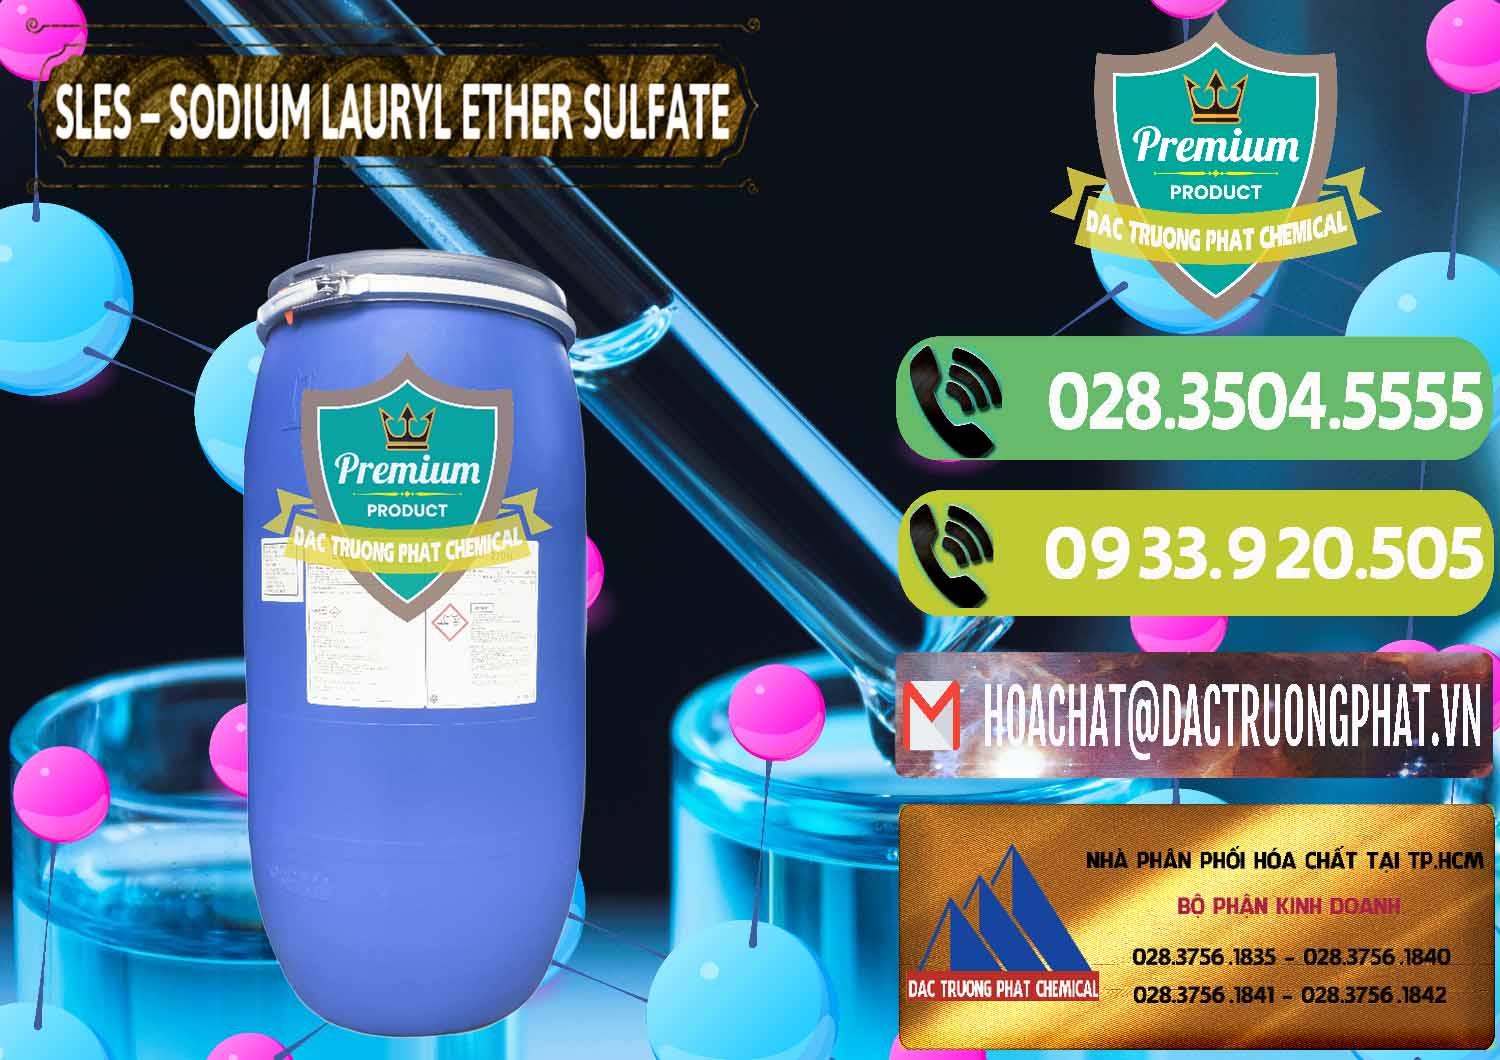 Cty chuyên cung ứng _ bán Chất Tạo Bọt Sles - Sodium Lauryl Ether Sulphate Kao Indonesia - 0046 - Nơi chuyên bán - cung cấp hóa chất tại TP.HCM - hoachatmientay.vn